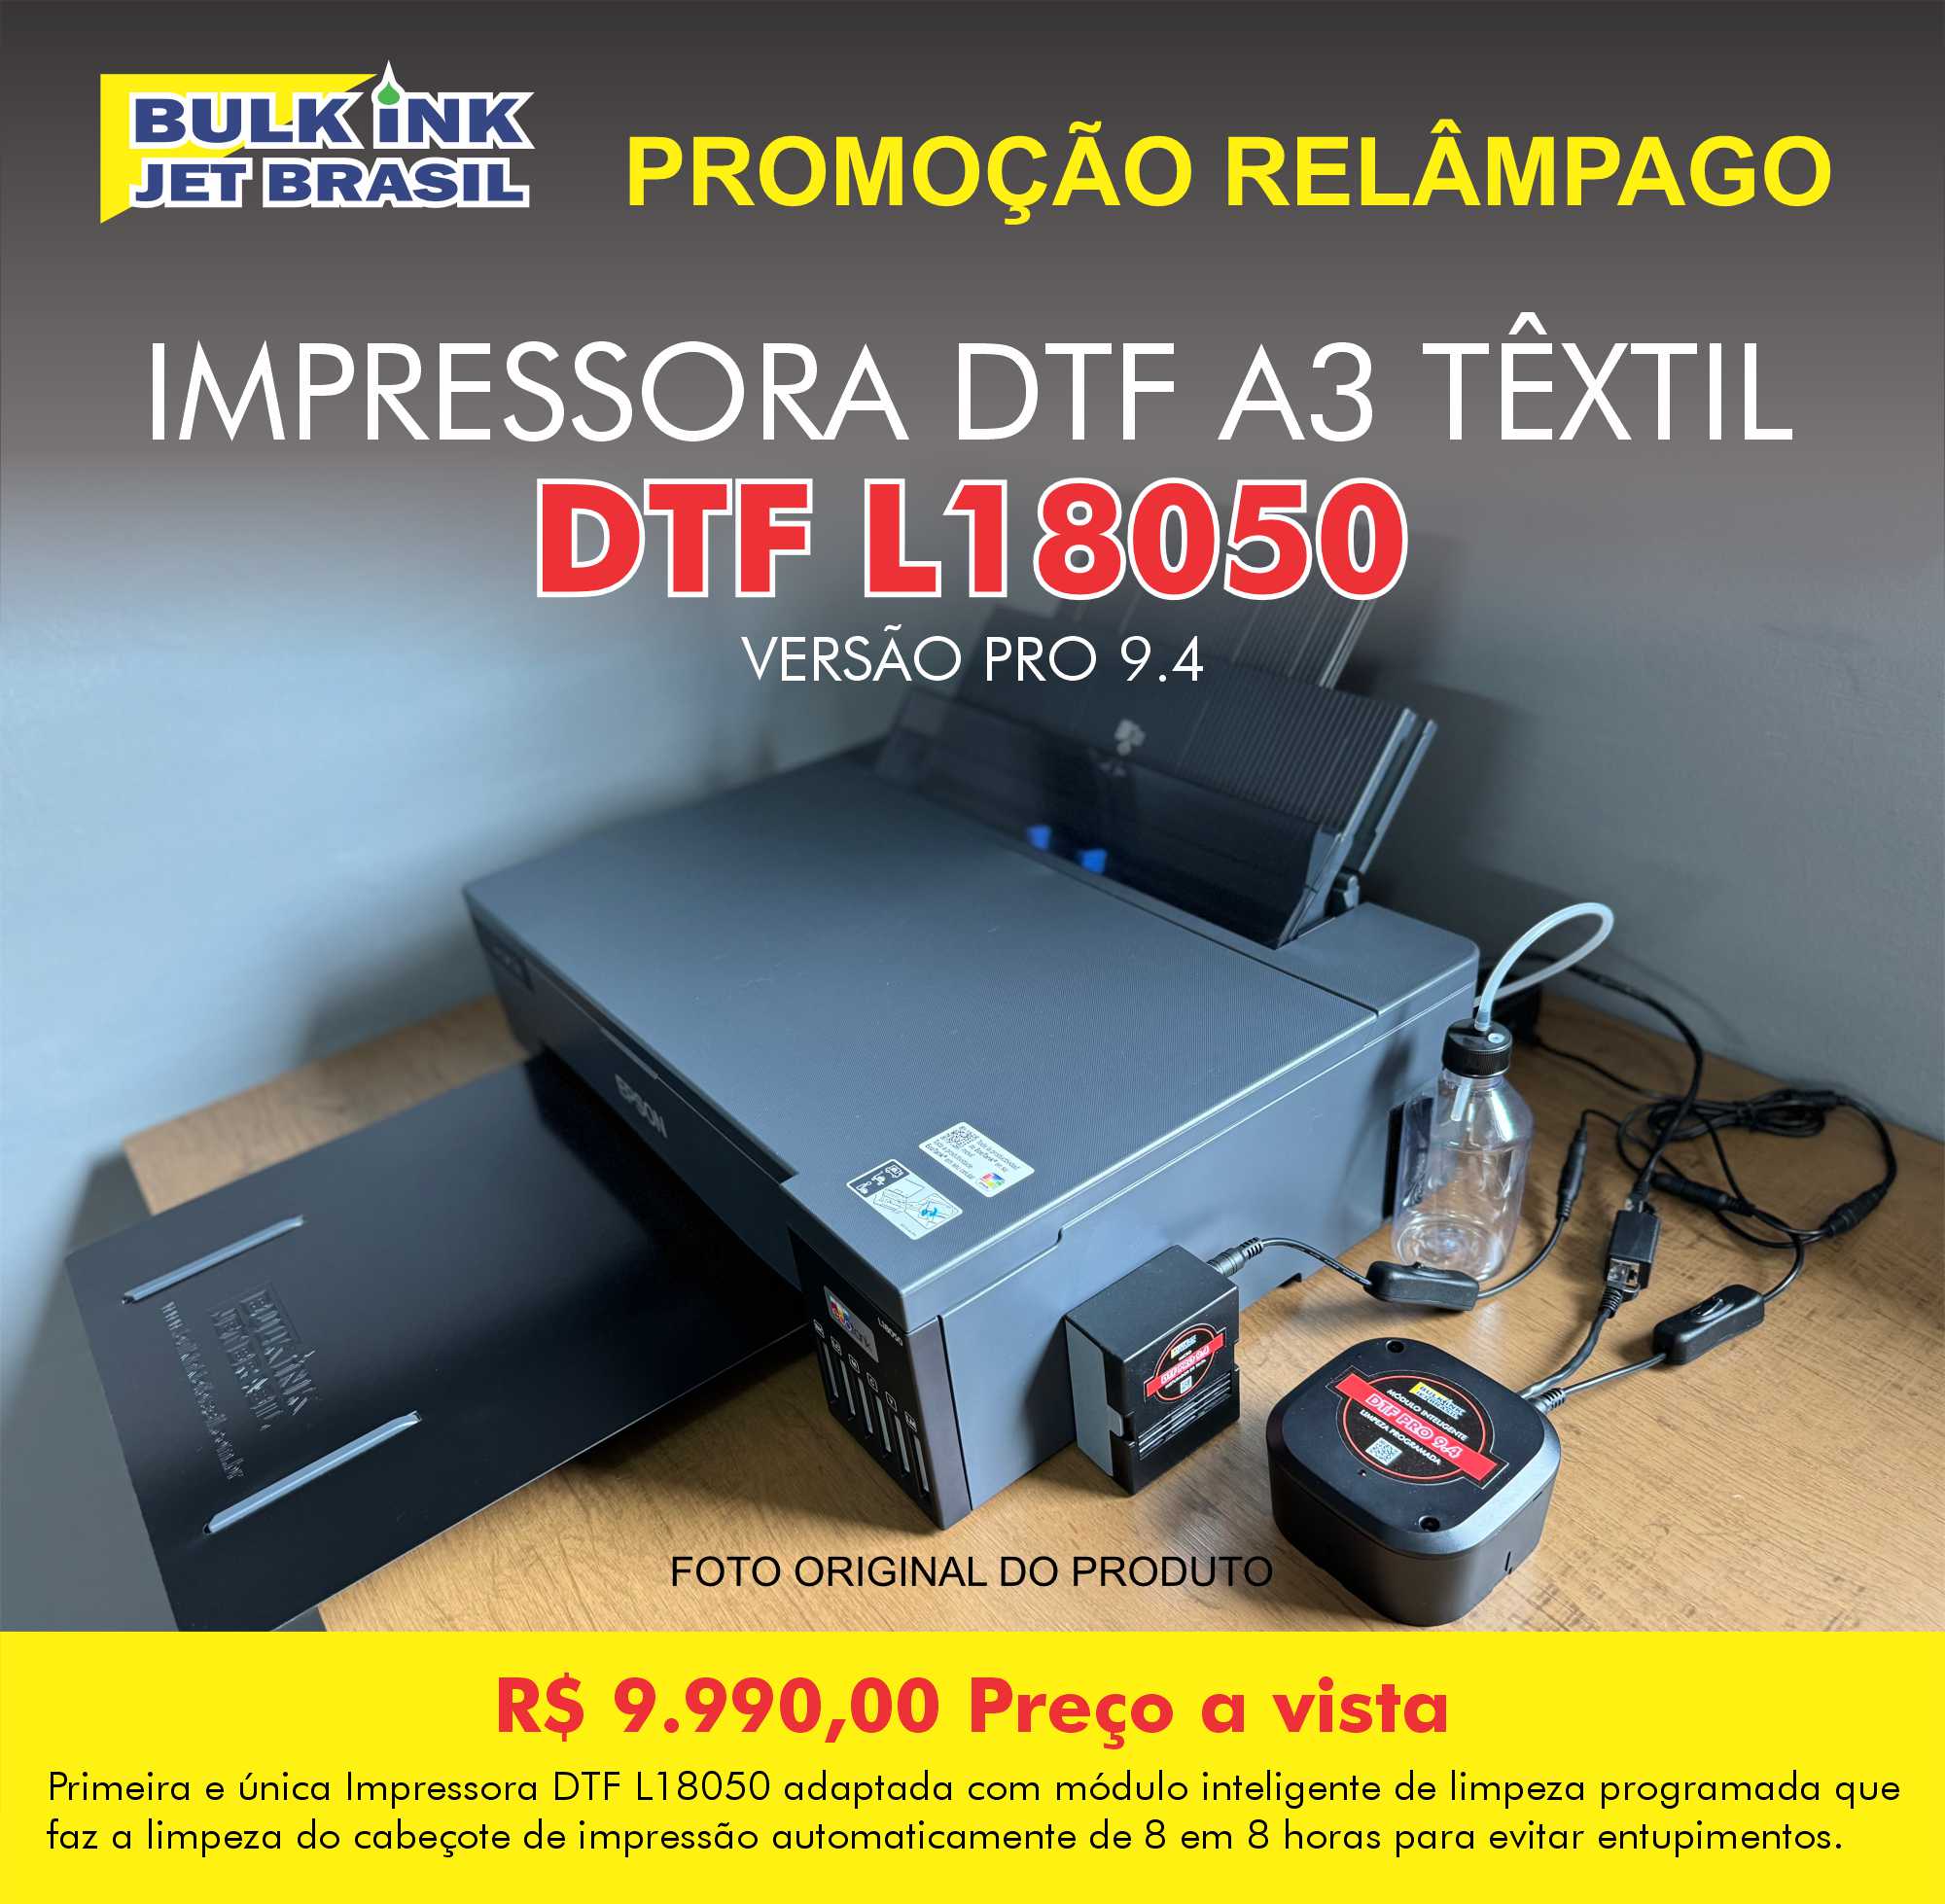 Impressora DTF L18050 Versão PRO 9.4 agora com modulo inteligente de limpeza programada micro misturador de tinta branca e bandeja frontal - Bulk Ink Jet Brasil - R$9.990,00